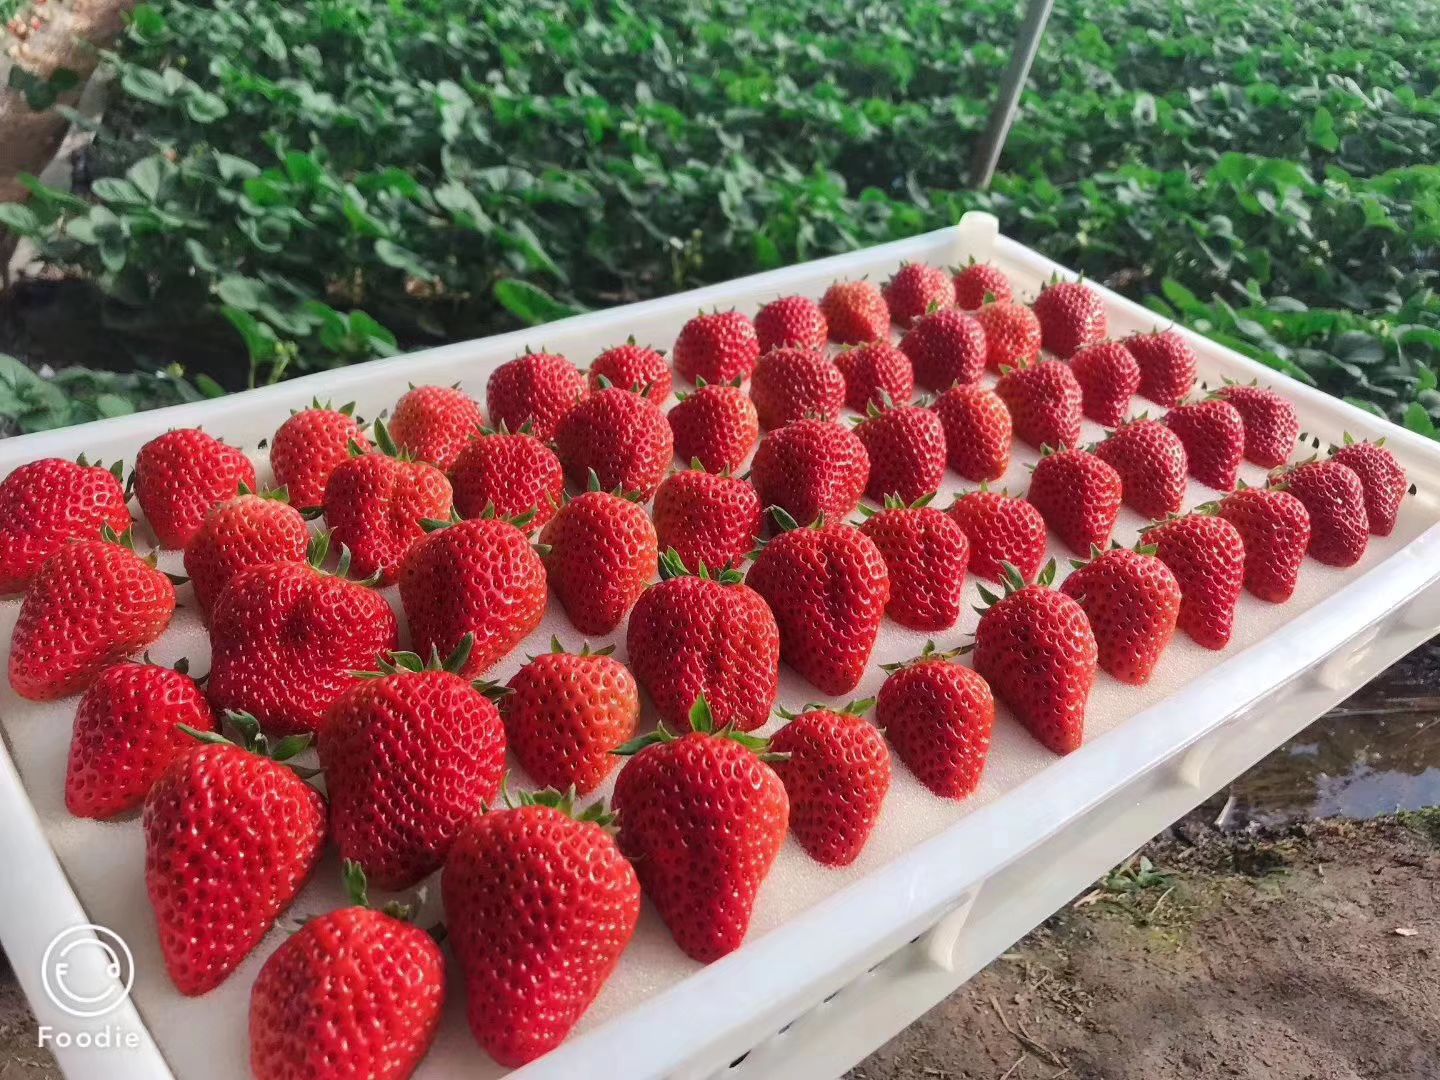 丹东九九红颜草莓有大量货源,诚邀有实力的经销商考察购买.